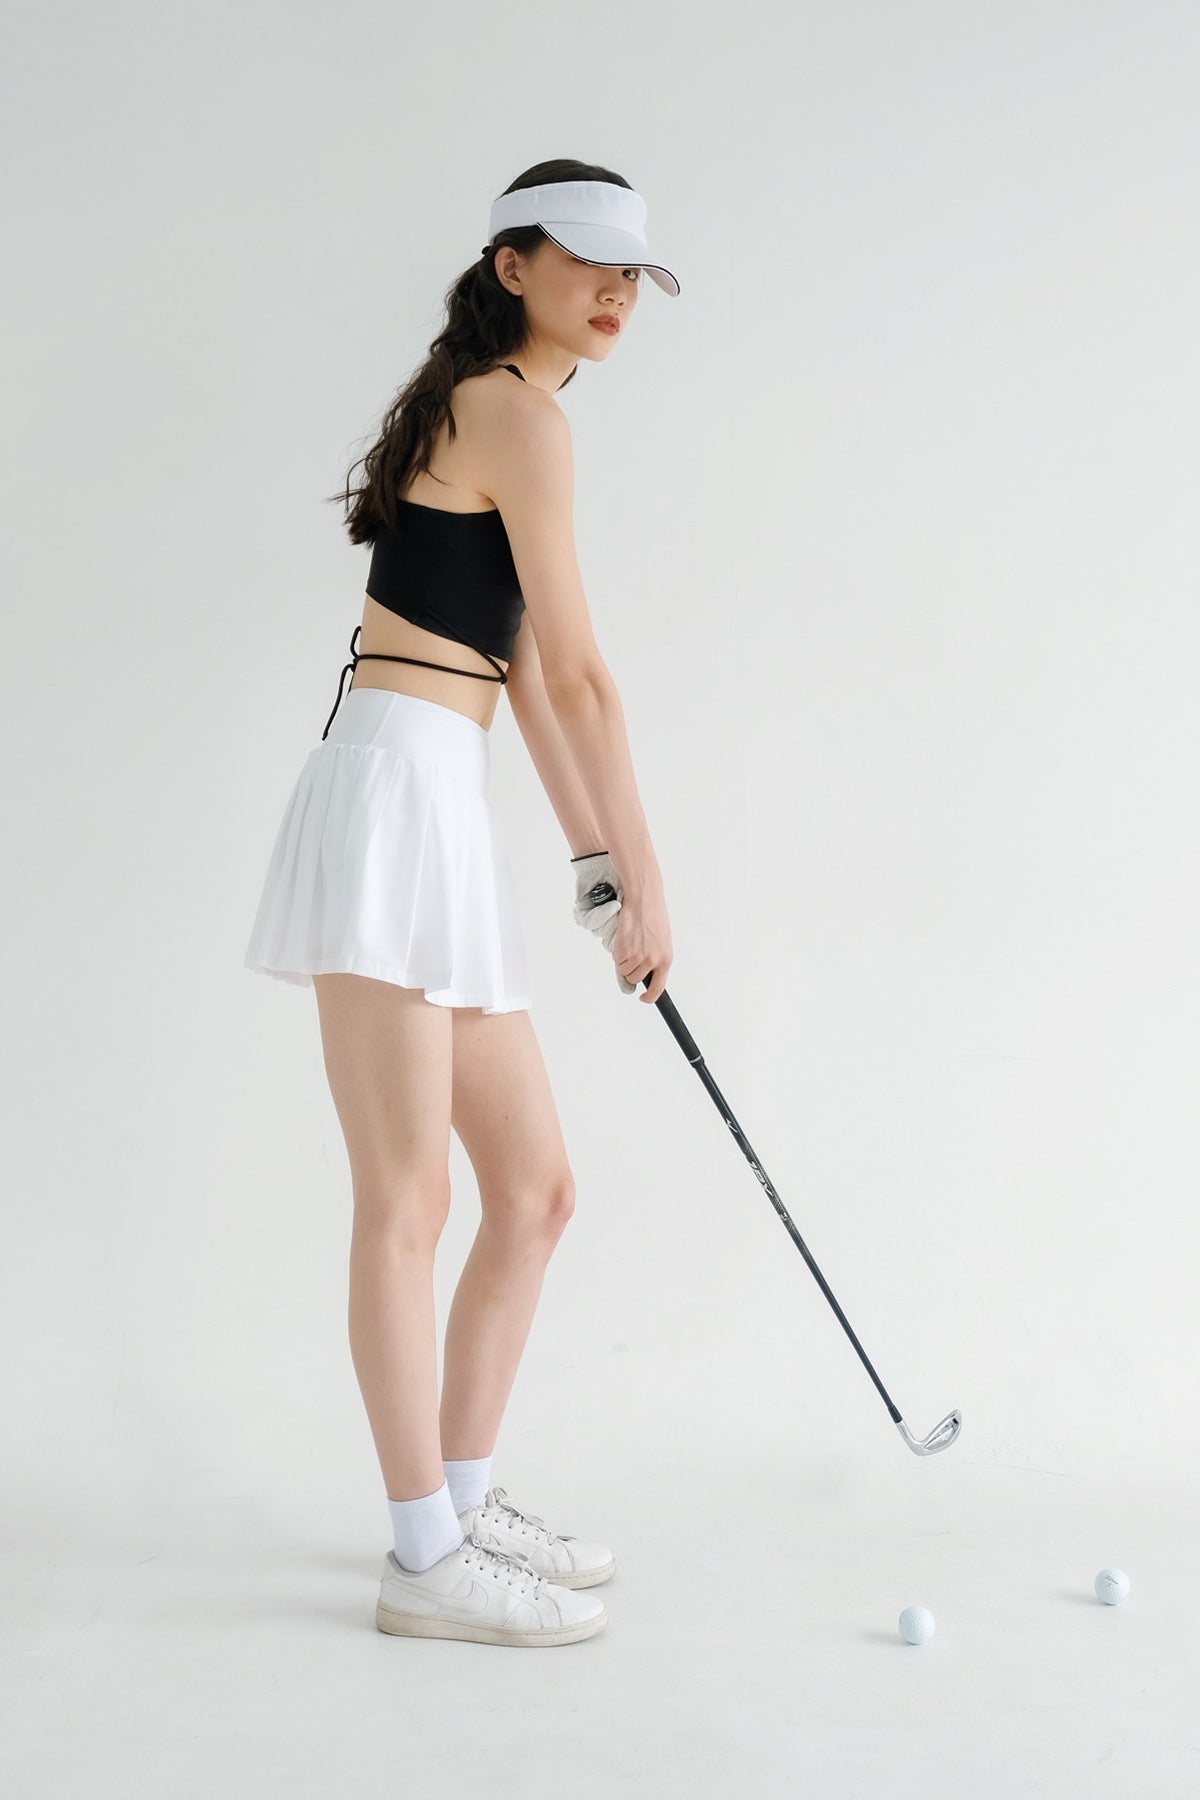 Ace Tennis Skirt In White (Bestseller)